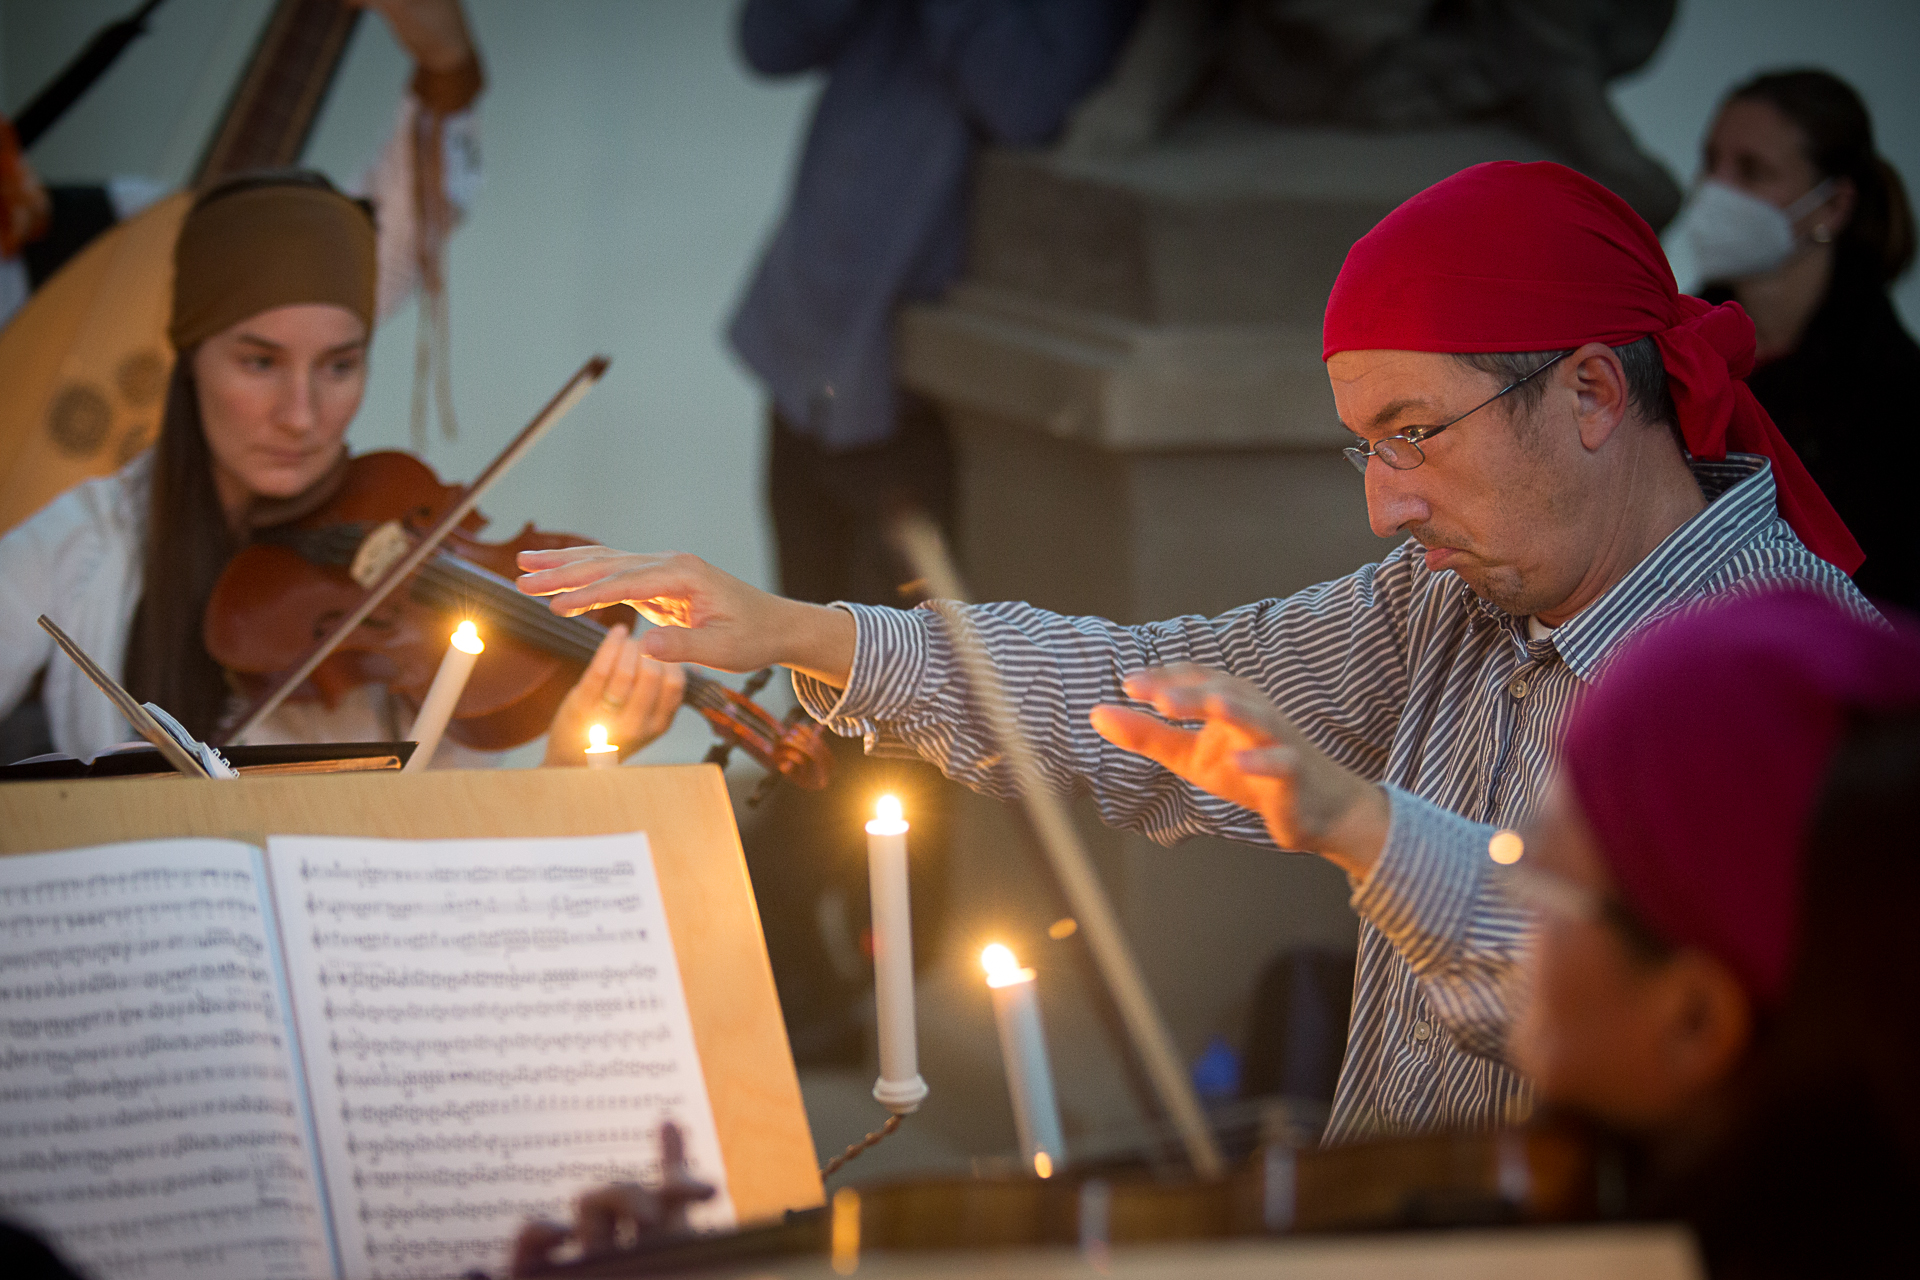 Tomáš Hanzlík diriguje operu Piráti v lapidáriu hospitálu Kuks v rámci Theatrum Kuks 2021, foto Marek Malušek.jpg (1.56 MB)